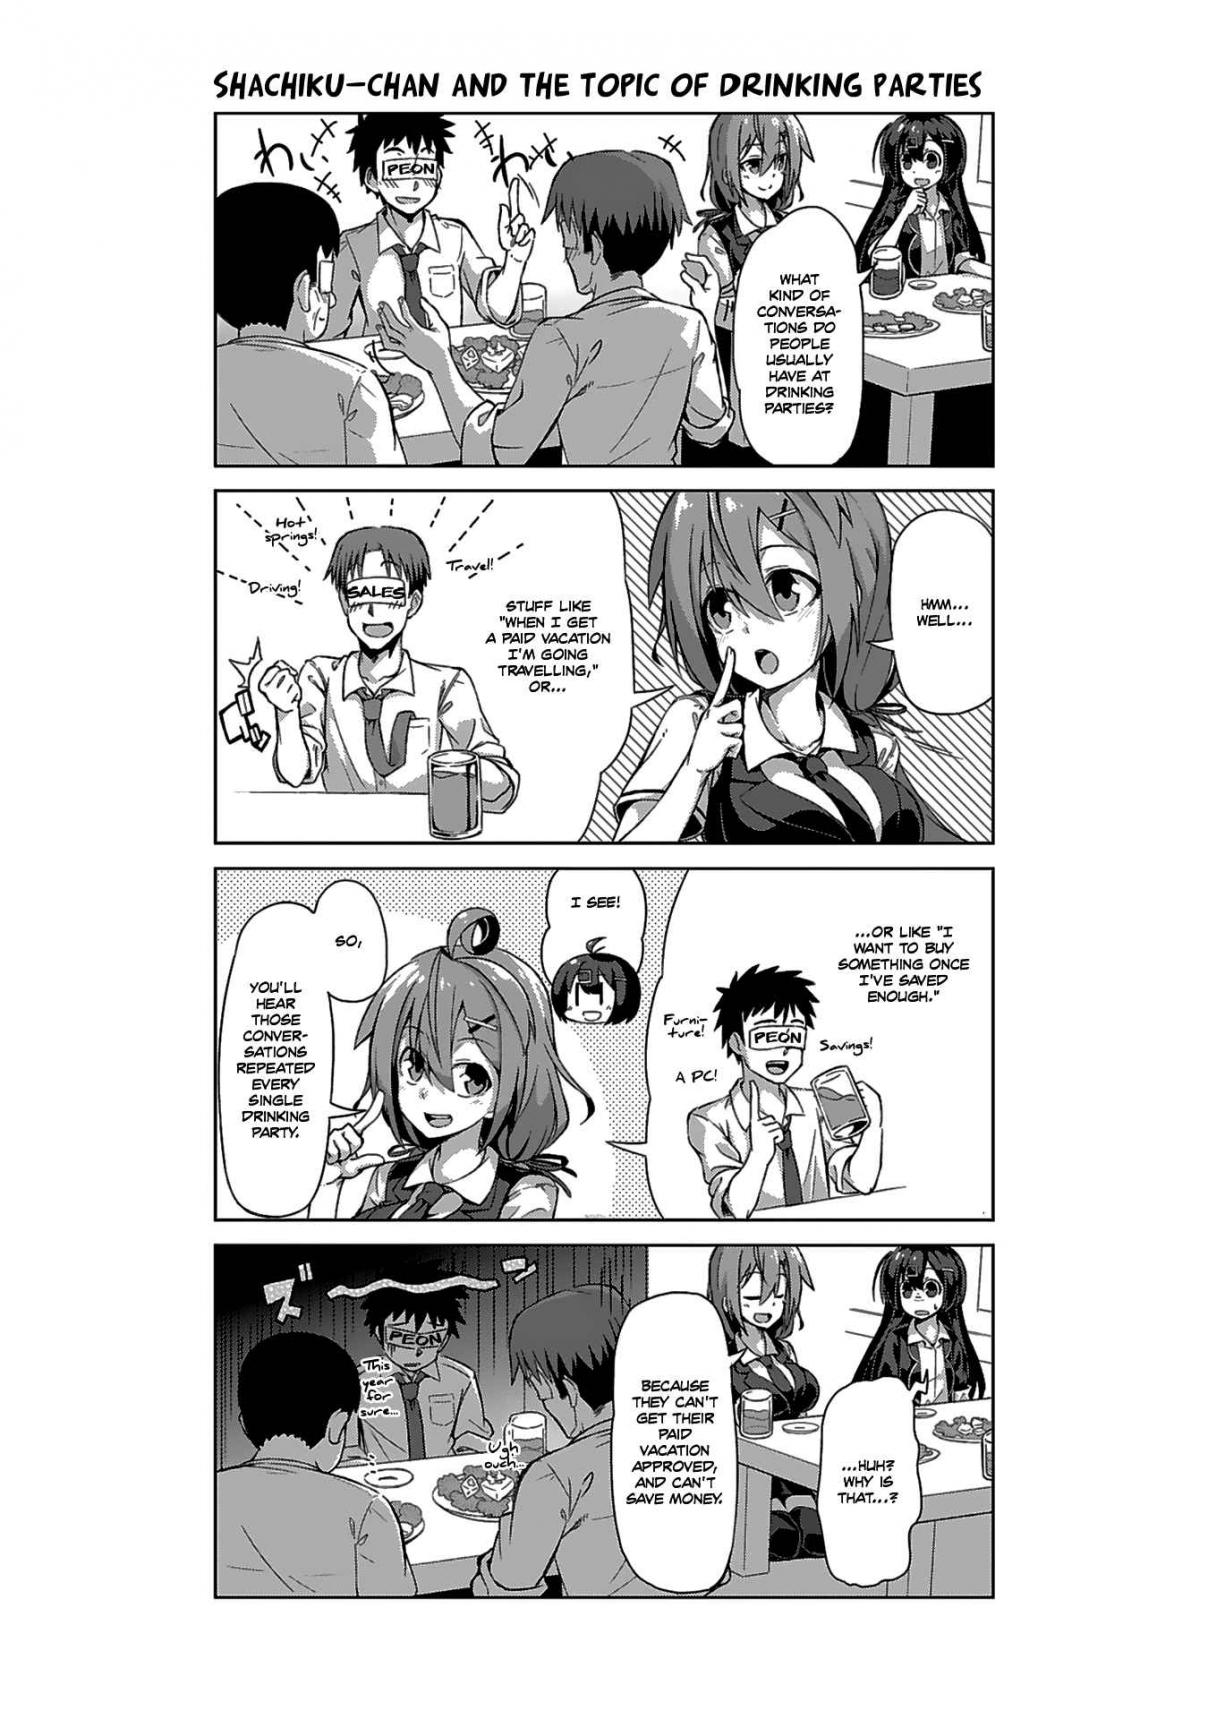 Ikinokore! Shachiku chan Vol. 2 Ch. 7 The Story of a Fun Drinking Party